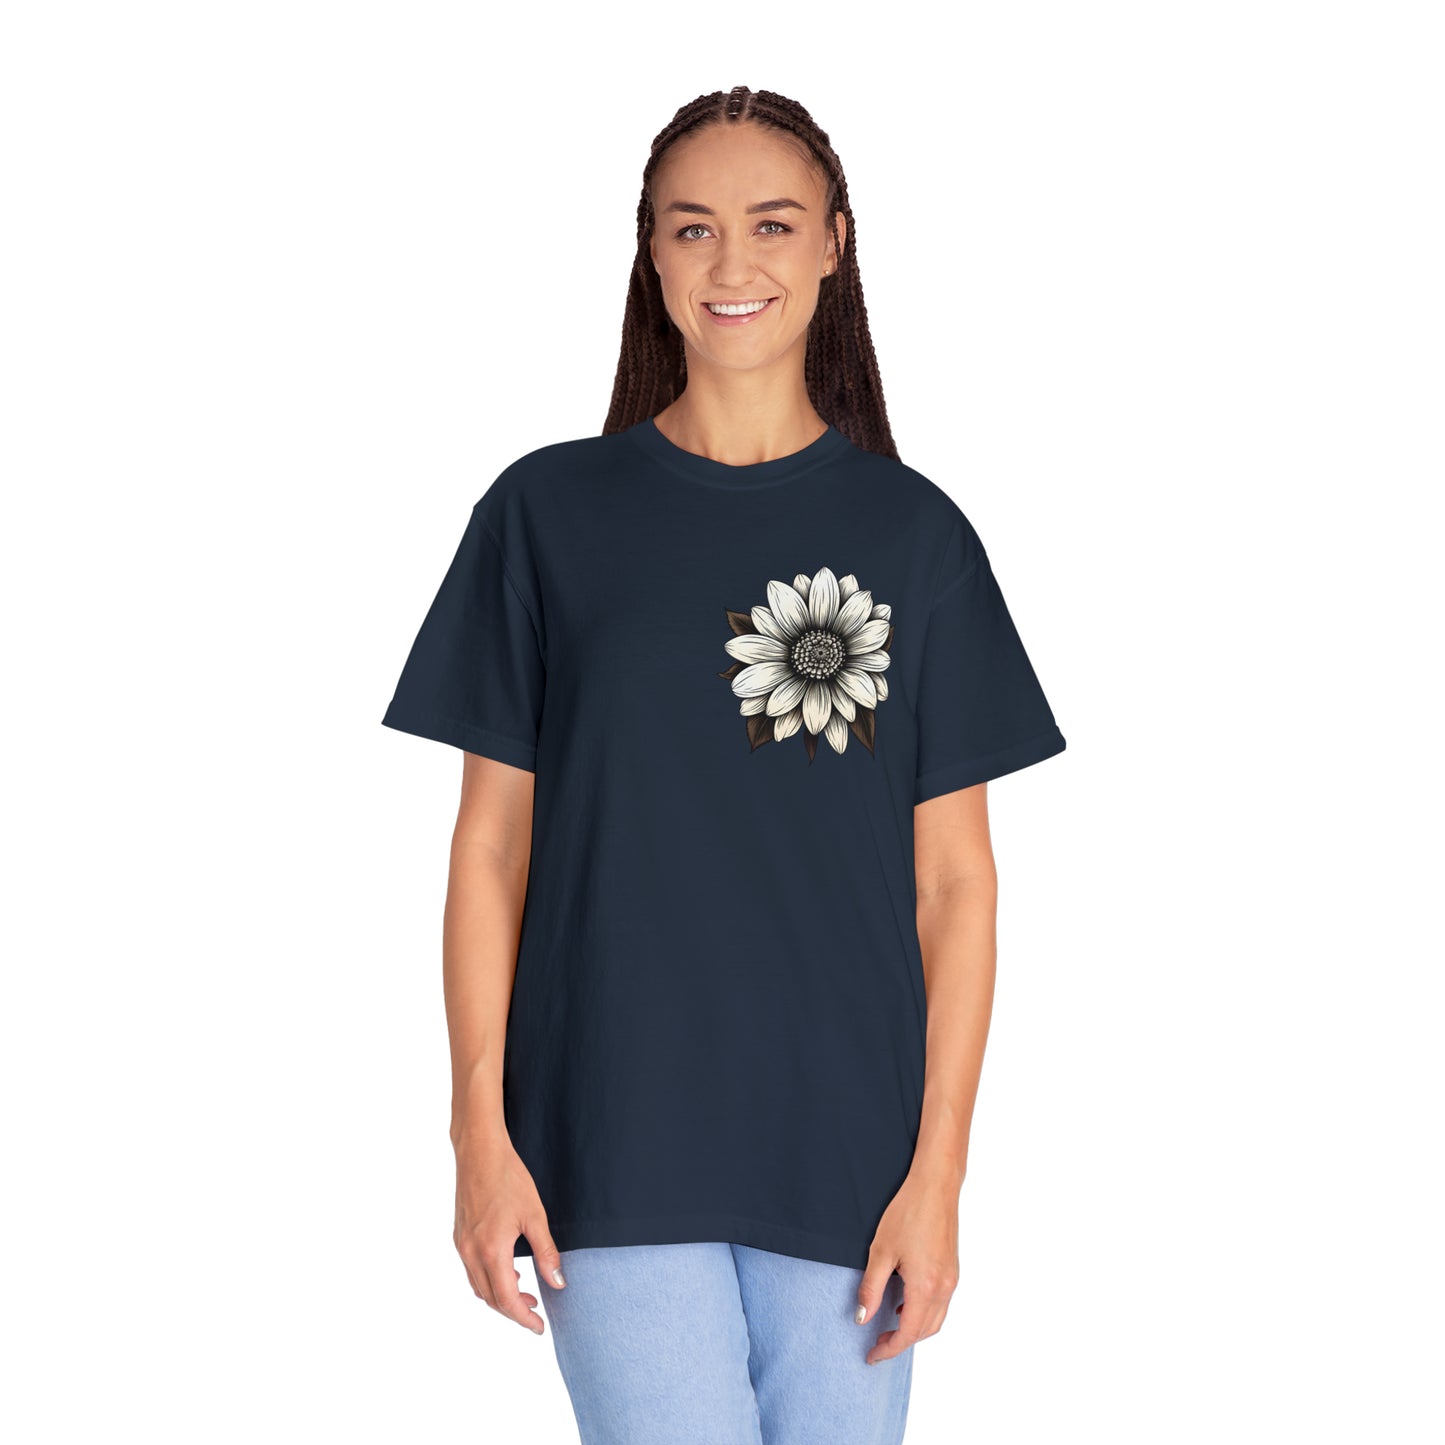 Sunflower Shirt Women Flower Shirt Aesthetic  Women Top Floral Graphic Tee Floral Shirt Flower T-shirt, Wild Flower Shirt Gift For Her